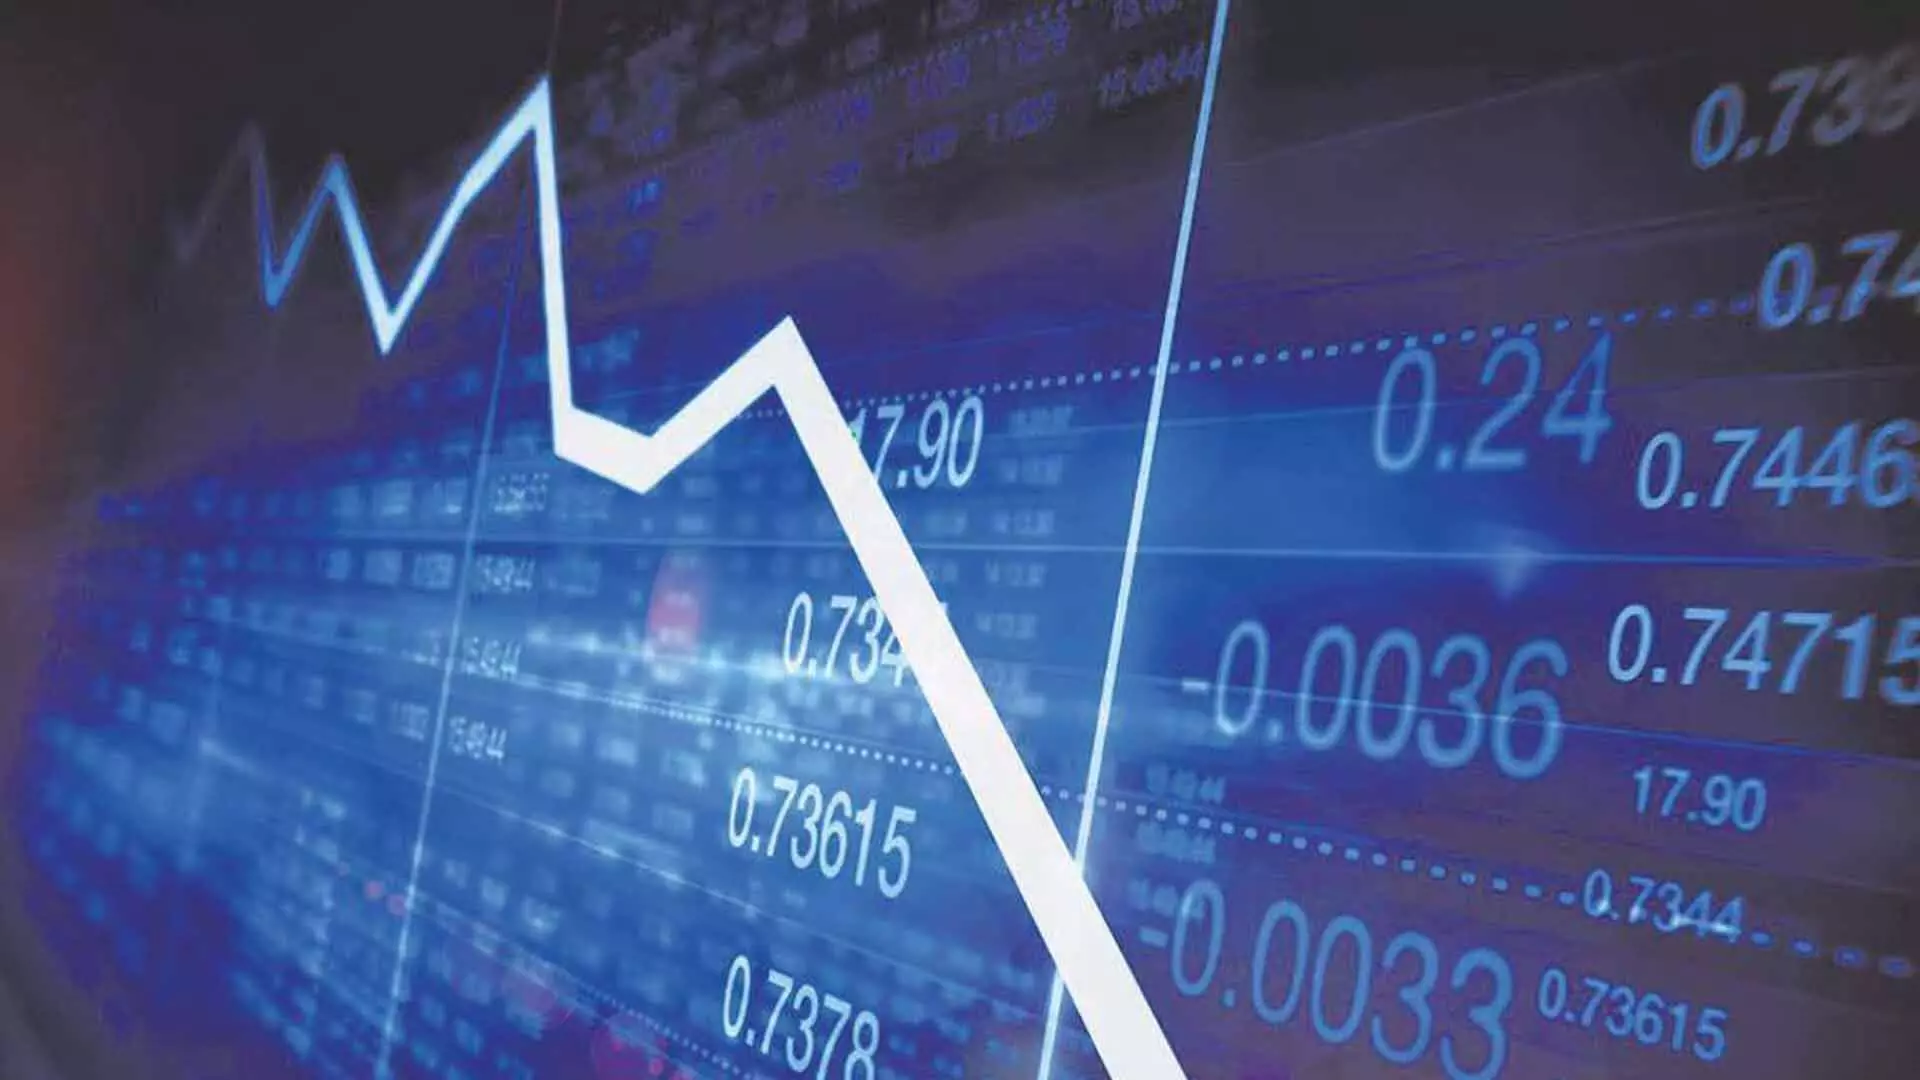 अमेरिकी फेड ब्याज दर निर्णय, सप्ताह शेयर बाजारों की दिशा तय होगी: Analysts